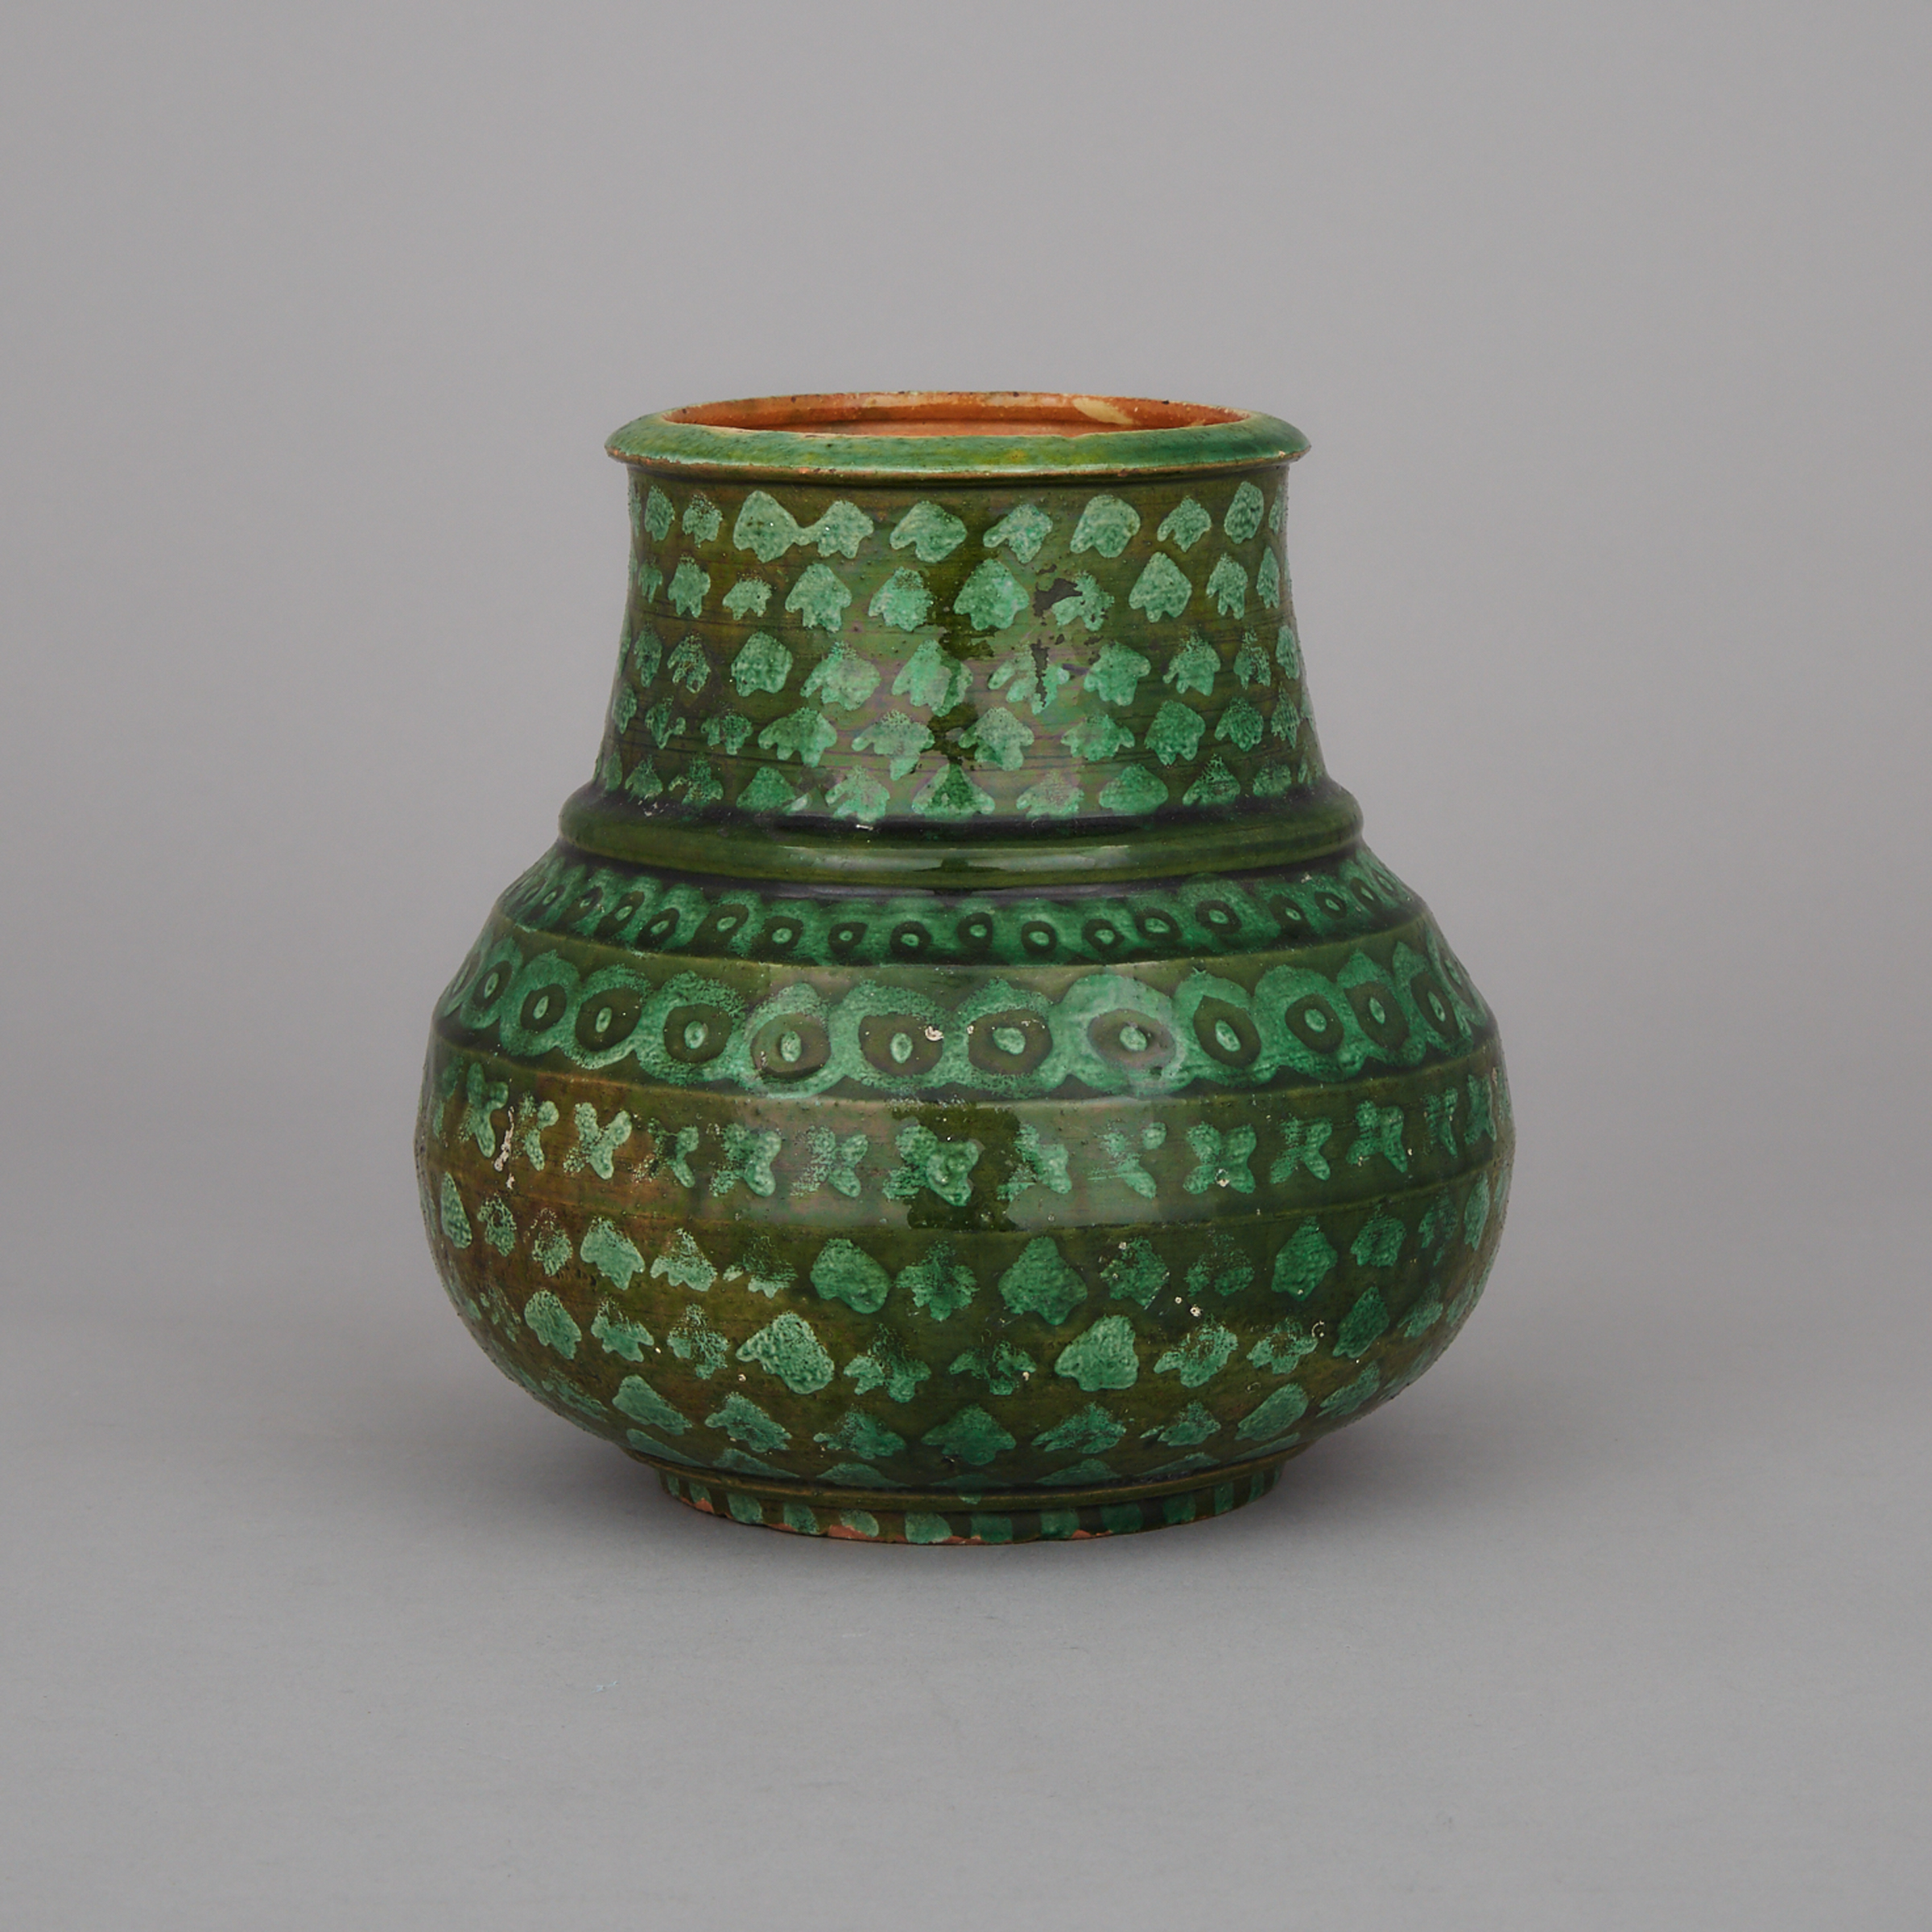 A Patterned Green Glazed Ceramic Vessel 